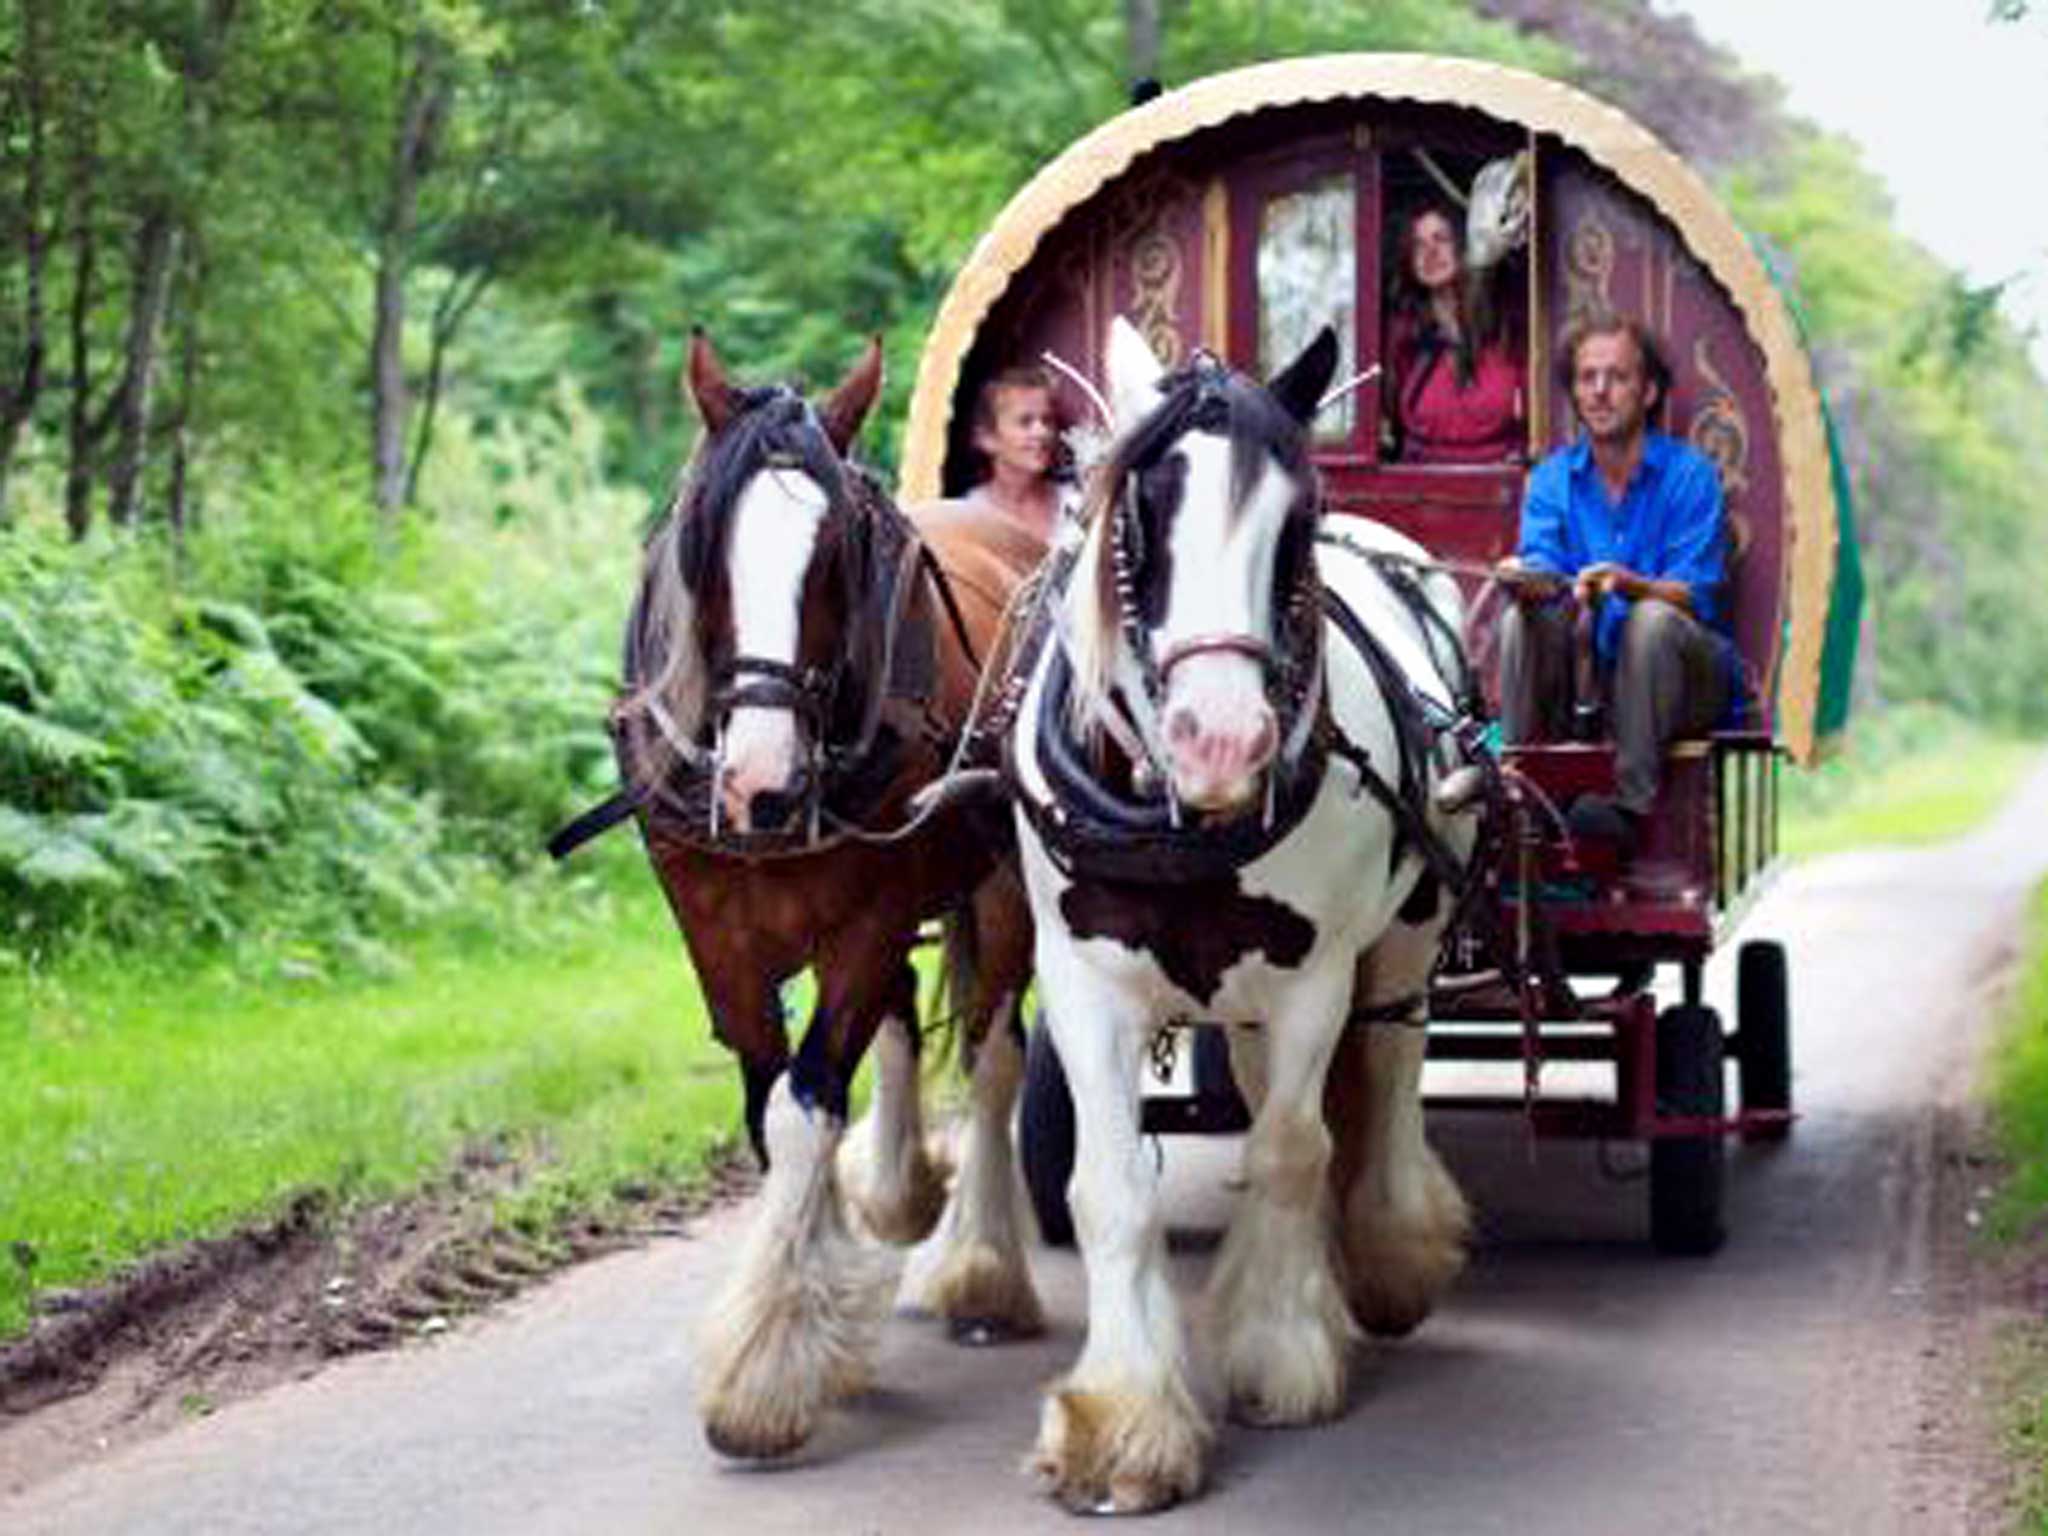 The traditional gypsy caravan